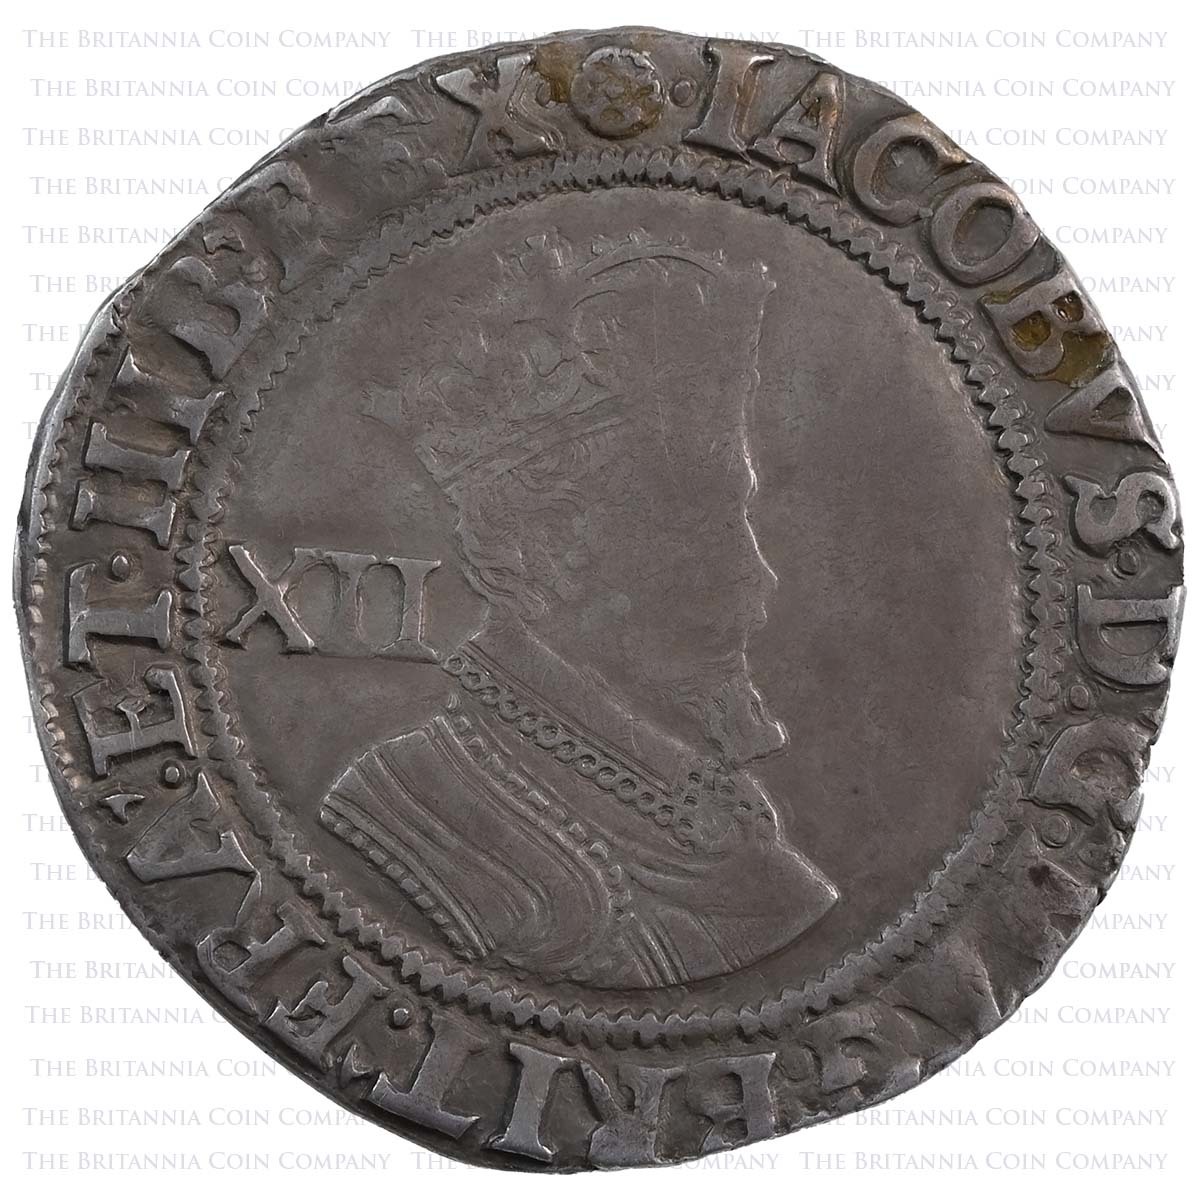 1605-1606 King James I Hammered Silver Shilling Coin Rose Obverse